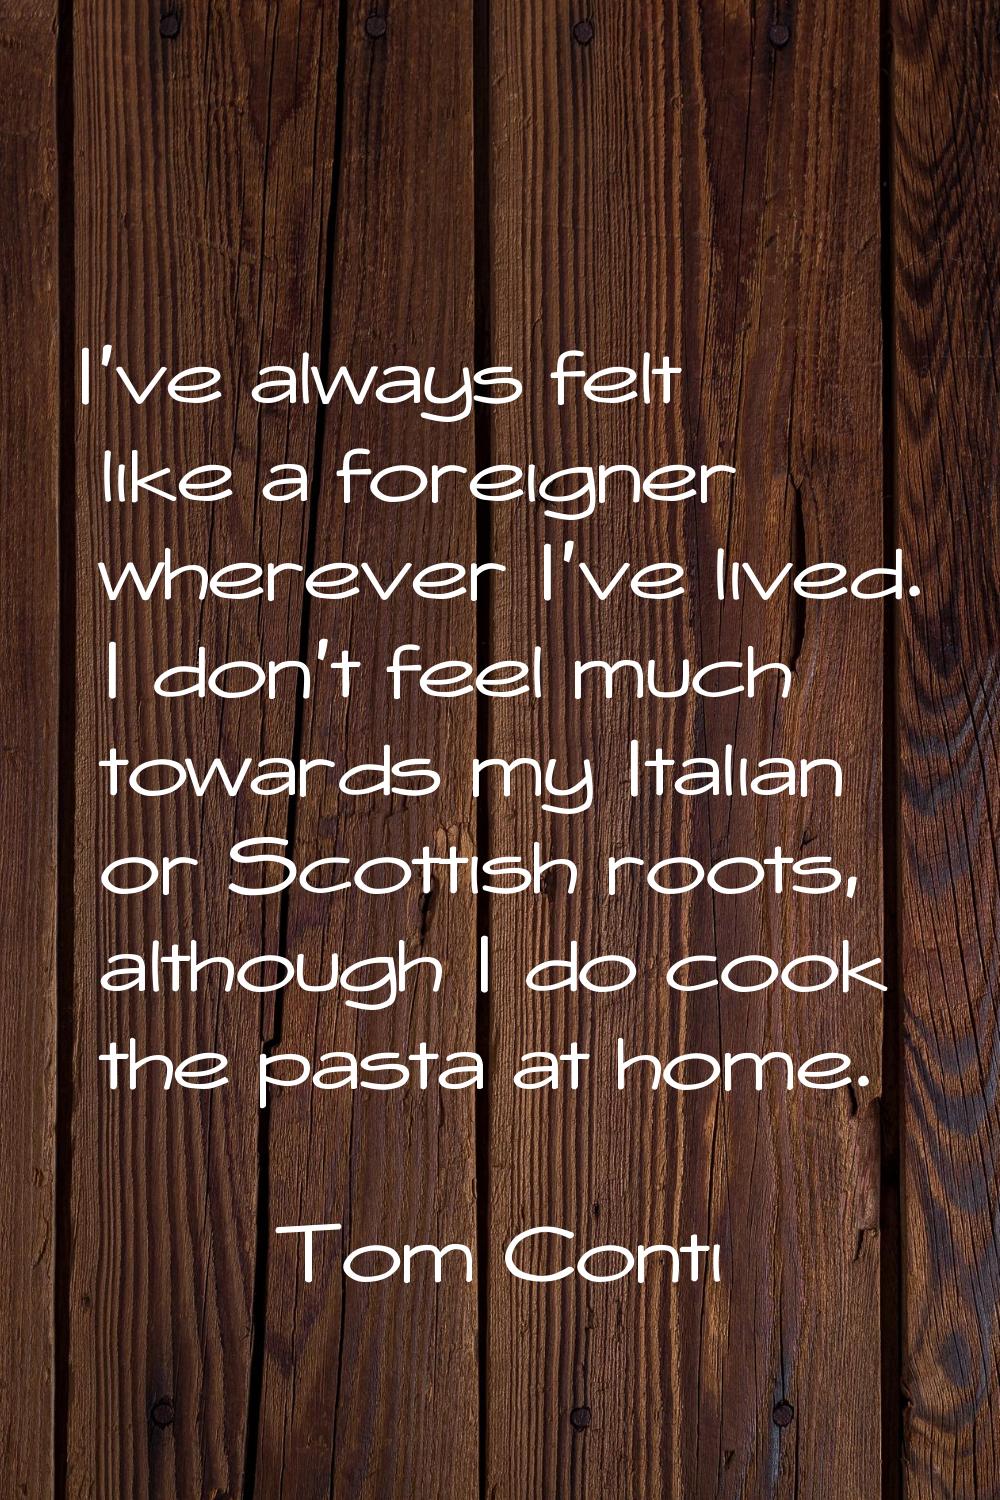 I've always felt like a foreigner wherever I've lived. I don't feel much towards my Italian or Scot